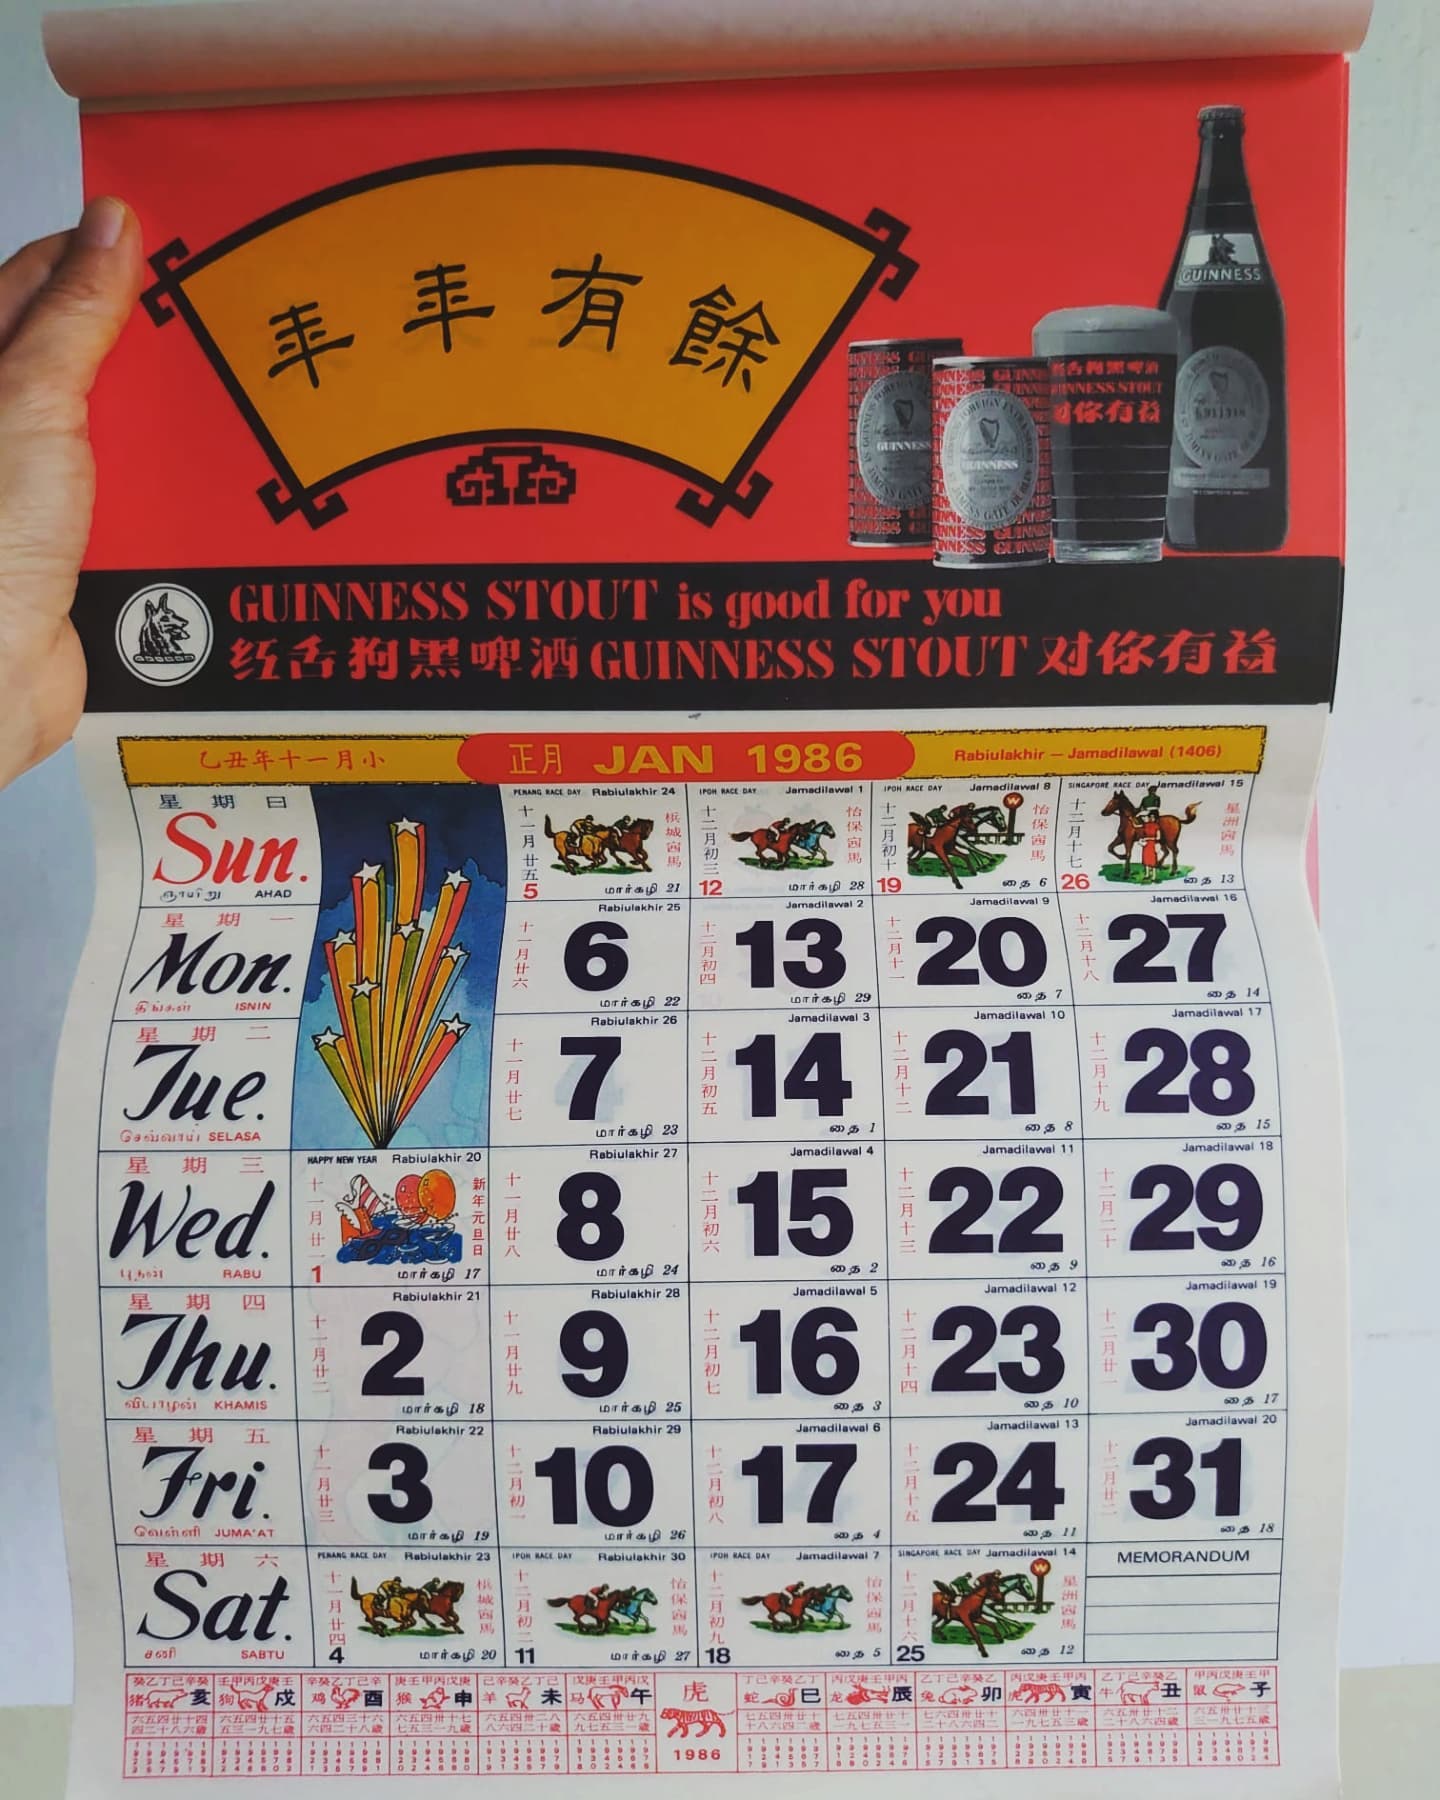 by my old school - 1986 calendar